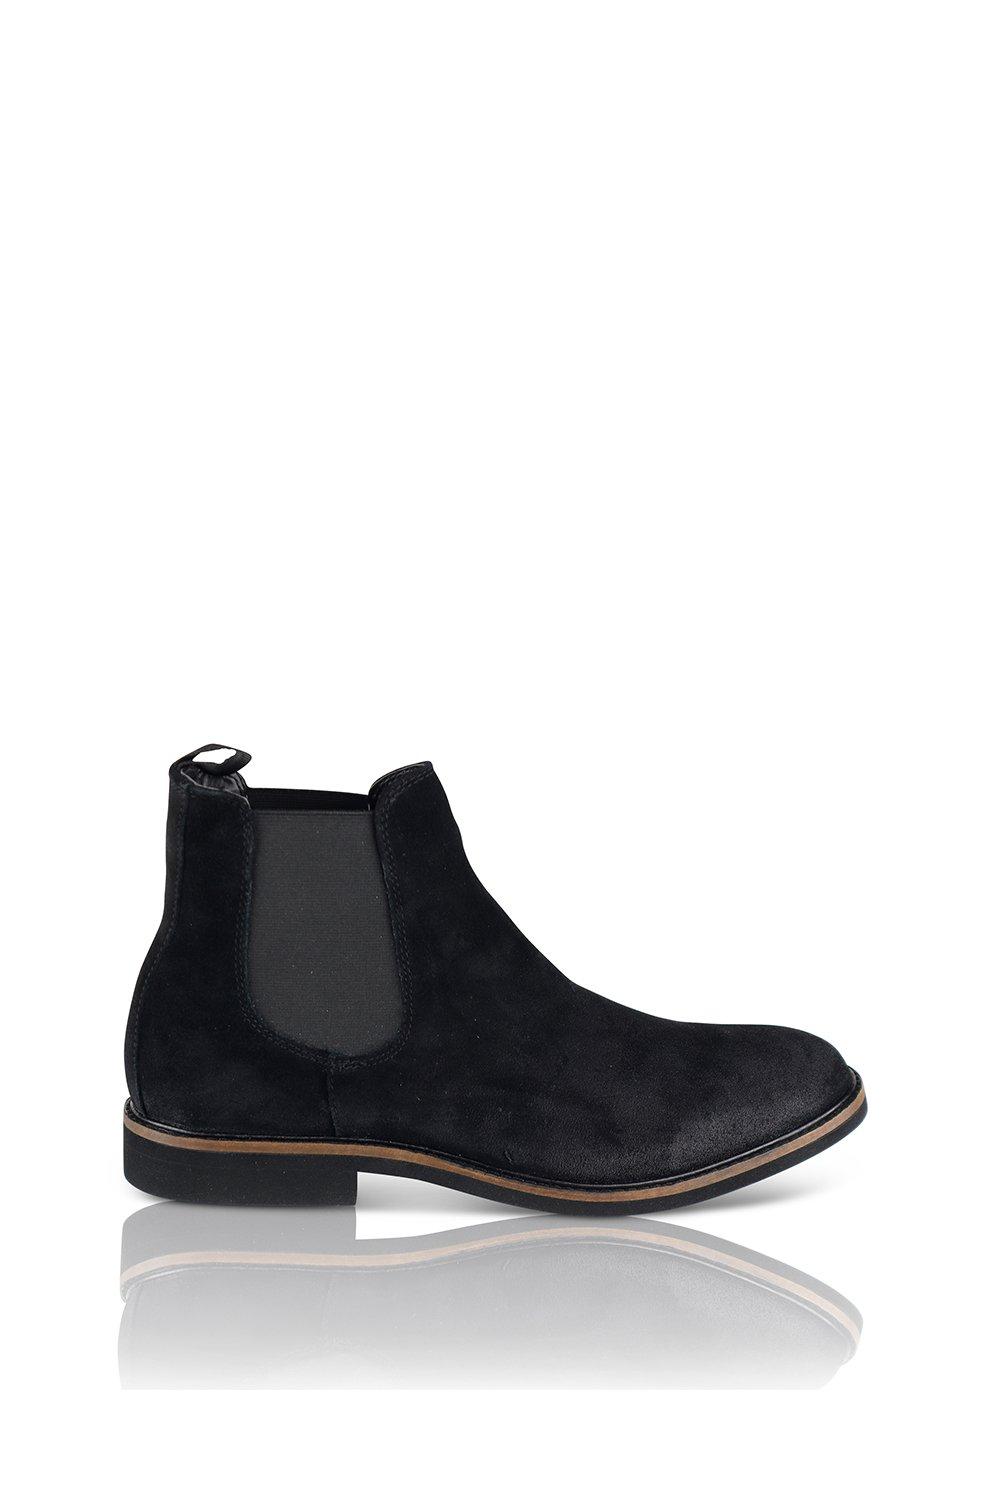 Замшевые ботинки челси San Diego Silver Street London, черный челси замшевые ботинки челси arco guess коричневый